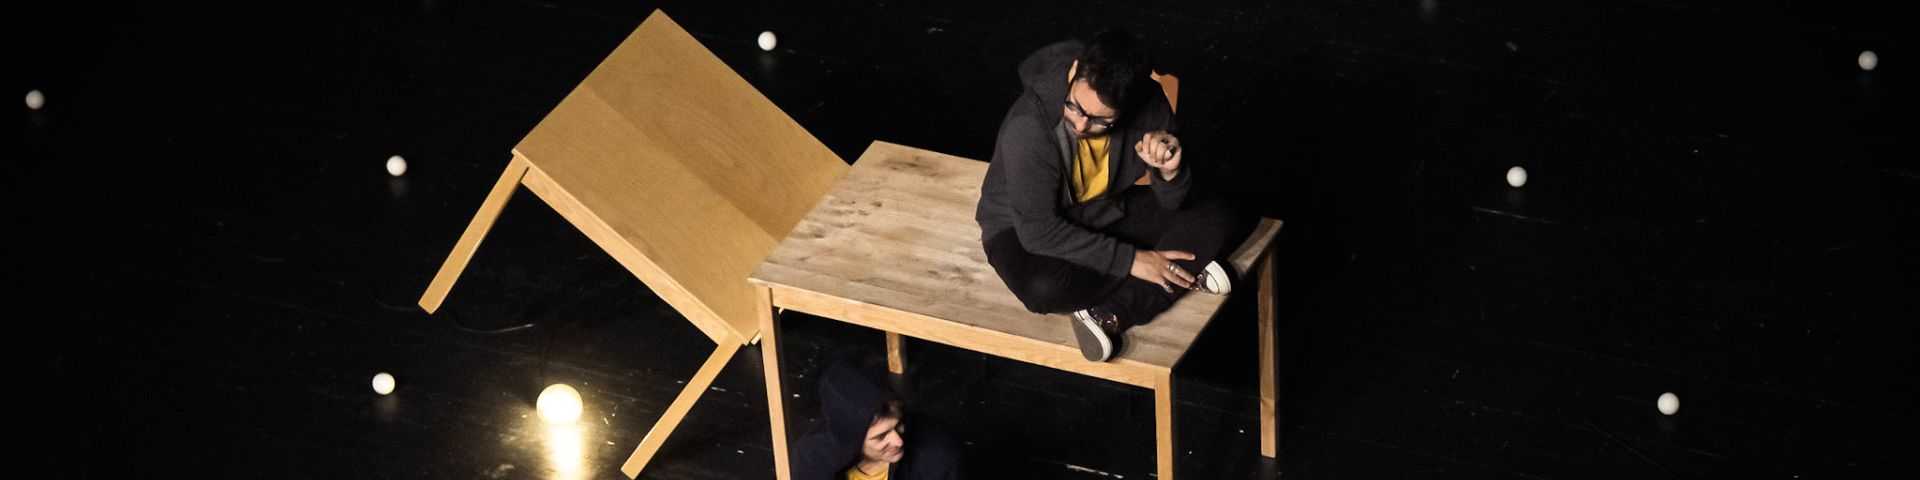 Diapositive pour le spectacle L'envers de nos décors de Clément Dazin et Thomas Scotto. Un homme est assis sur une table en pin avec des boules de jonglages partout autour de lui.